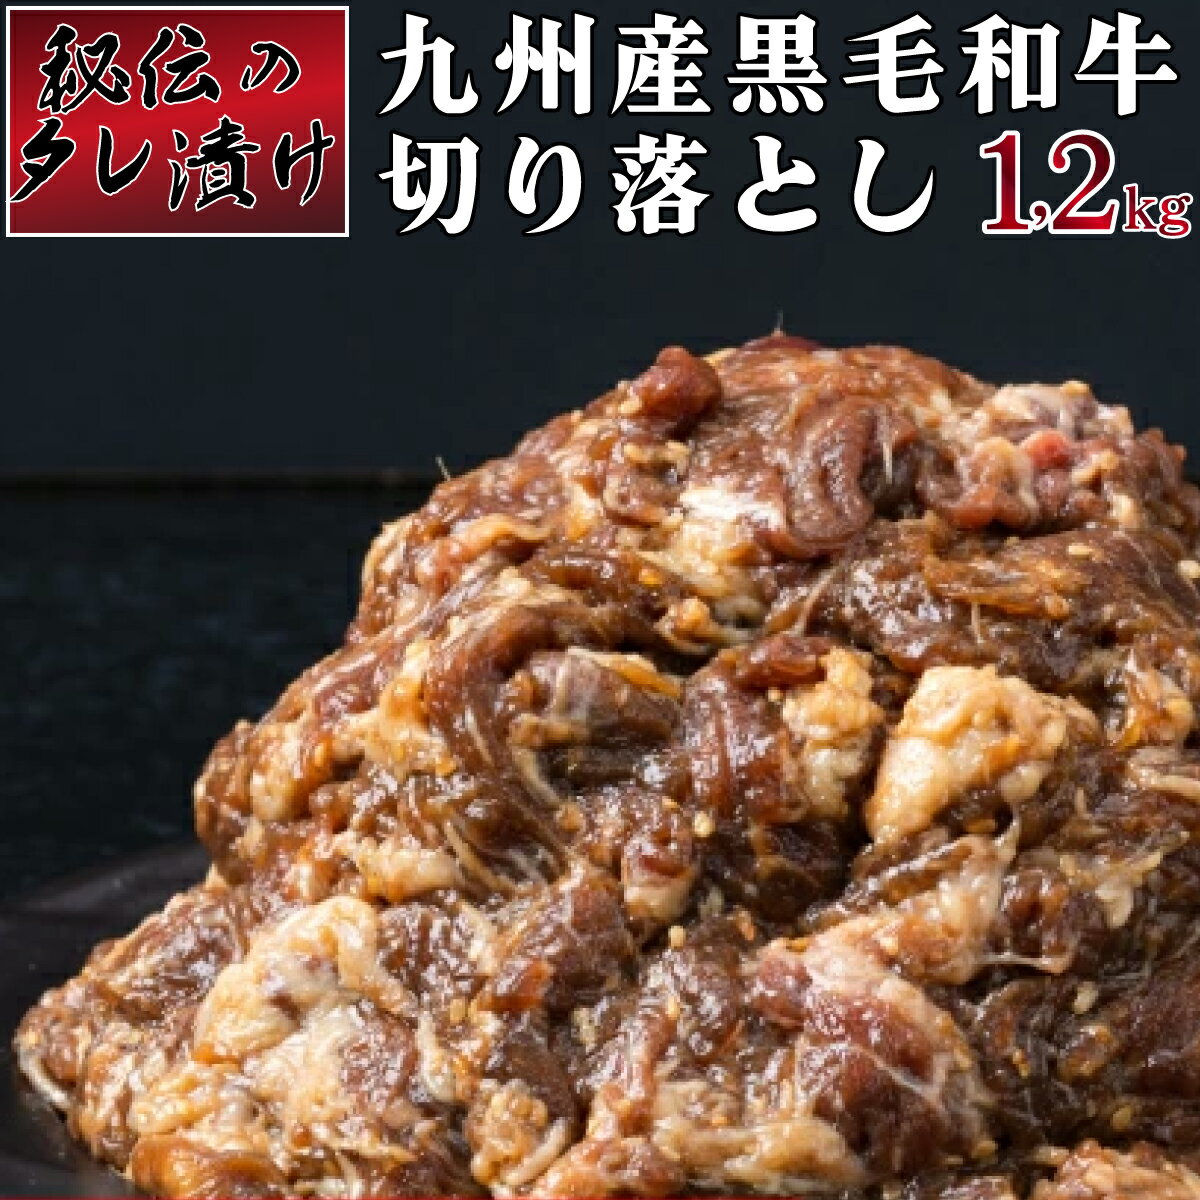 秘伝のタレ漬け!九州産黒毛和牛切り落とし焼き肉用 1.2kg